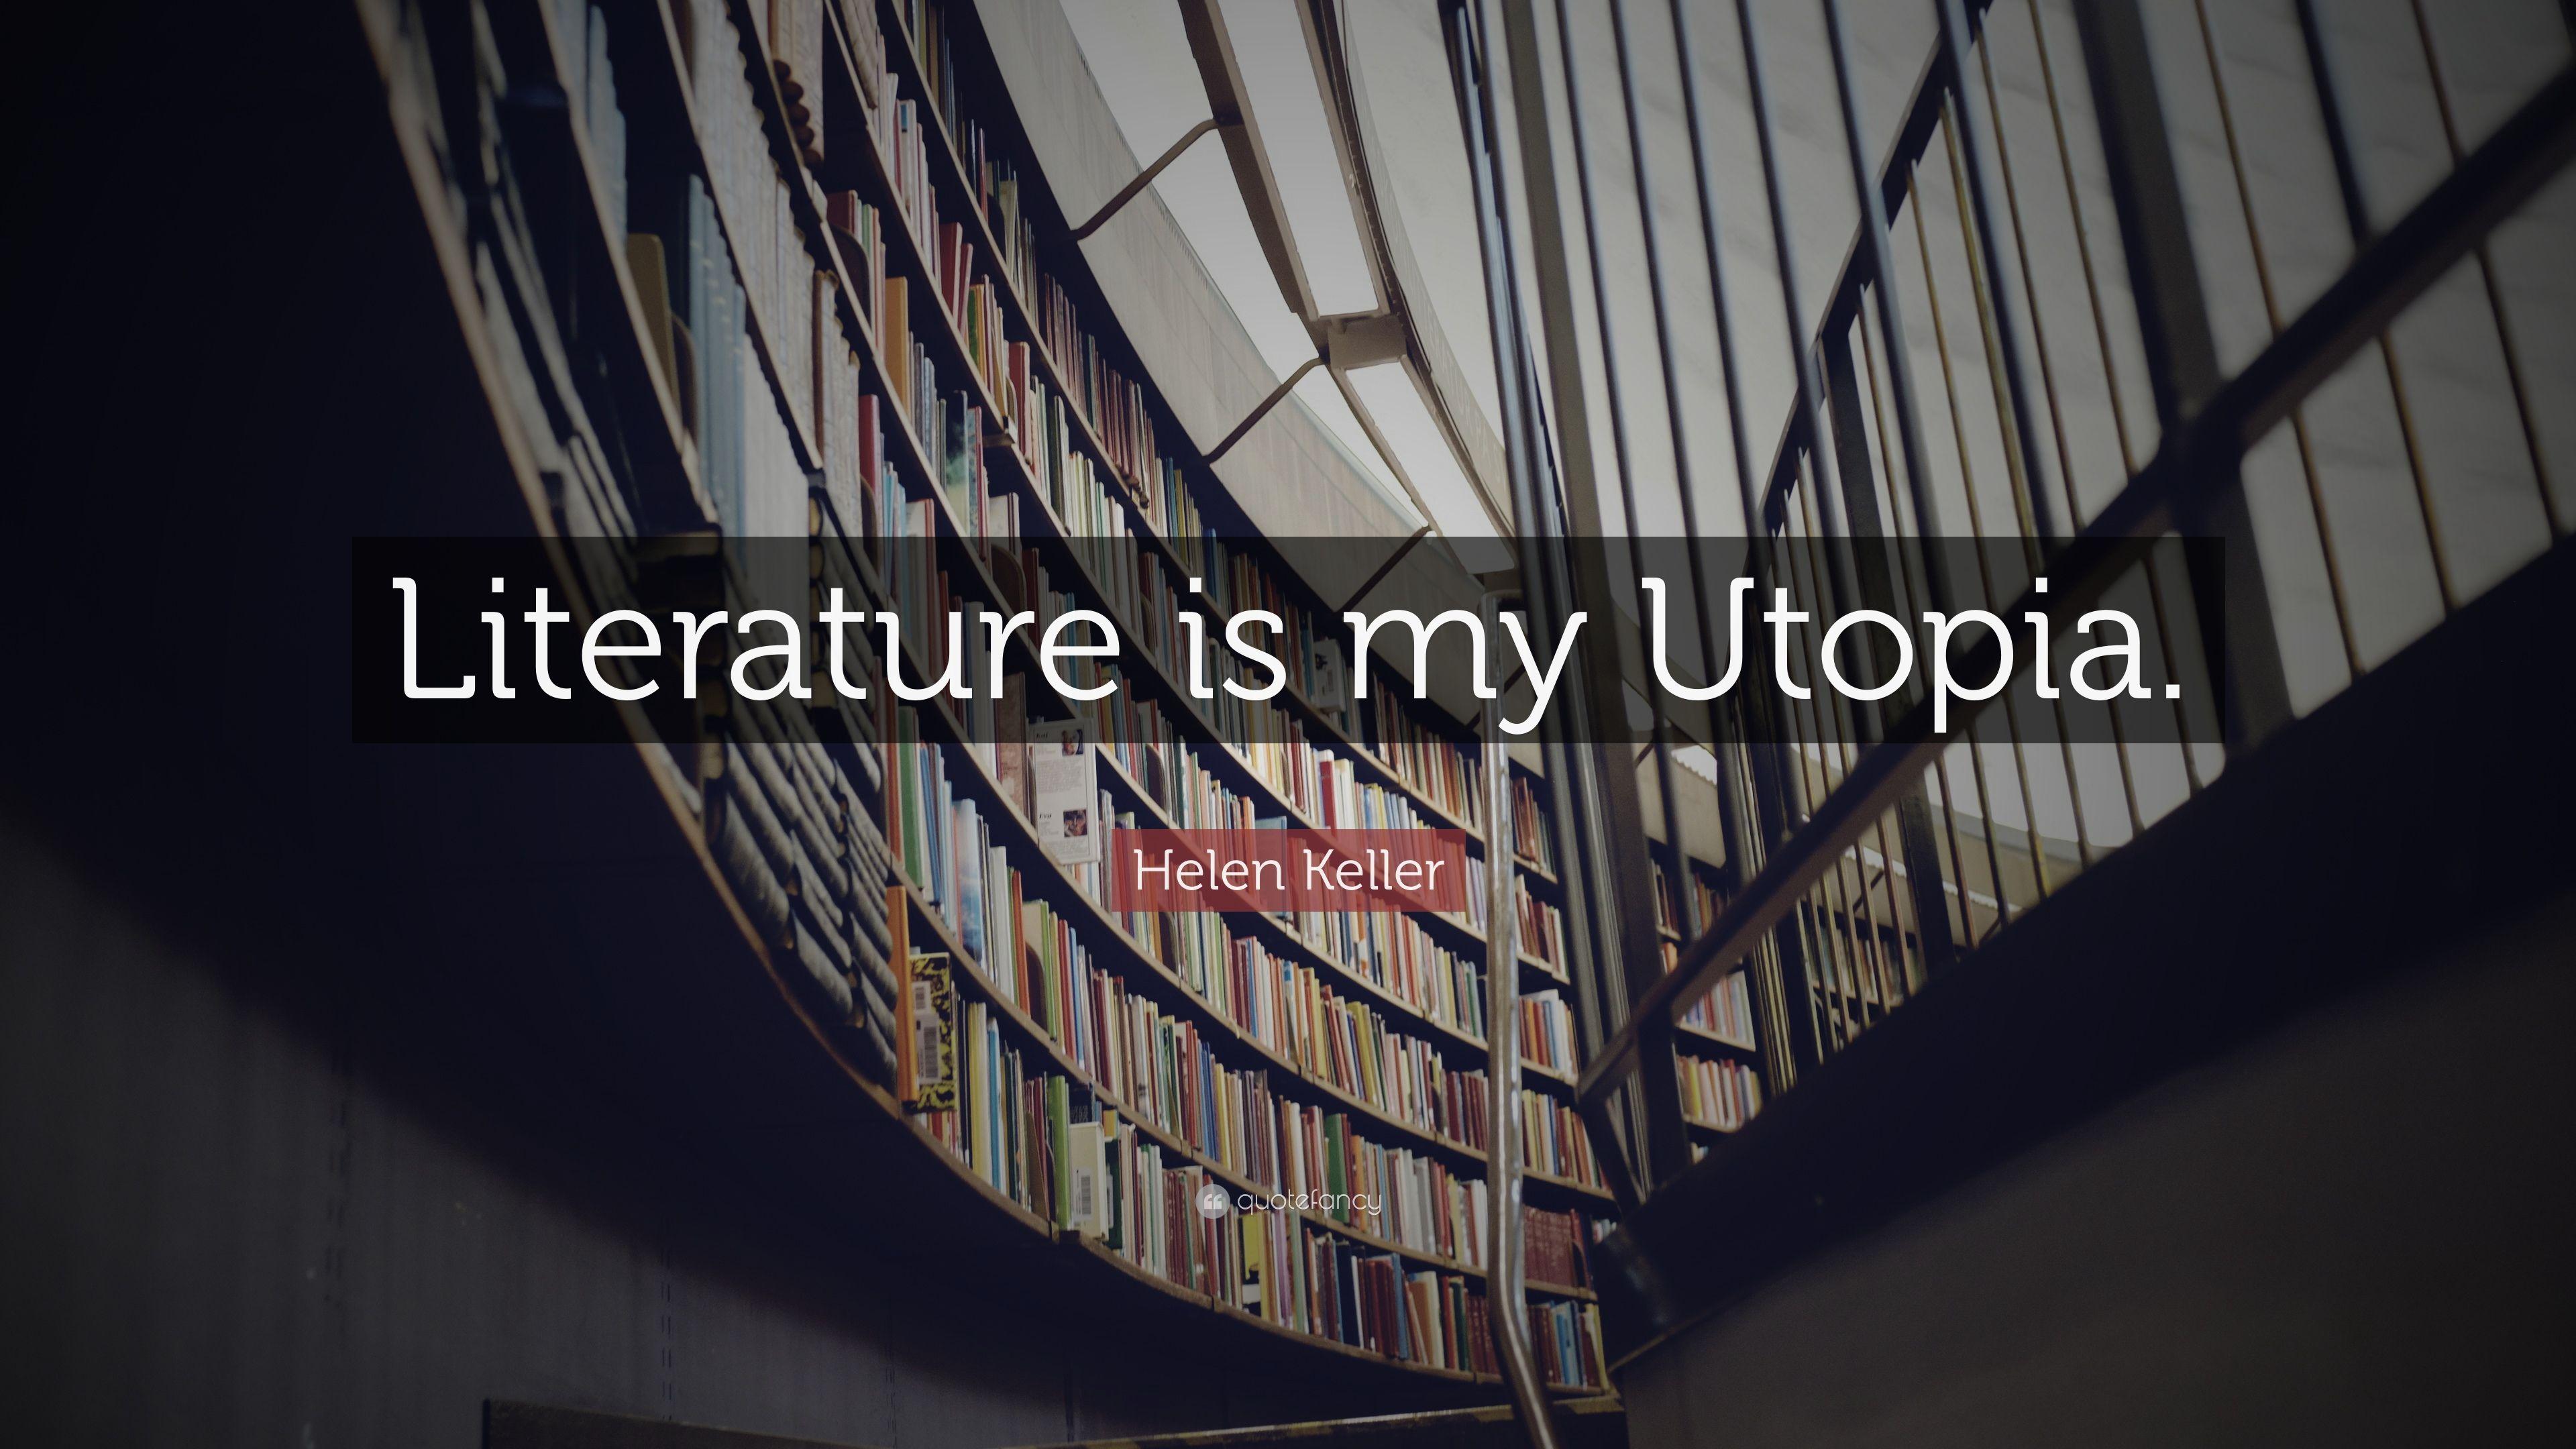 Helen Keller Quote: “Literature is my Utopia.” 10 wallpaper